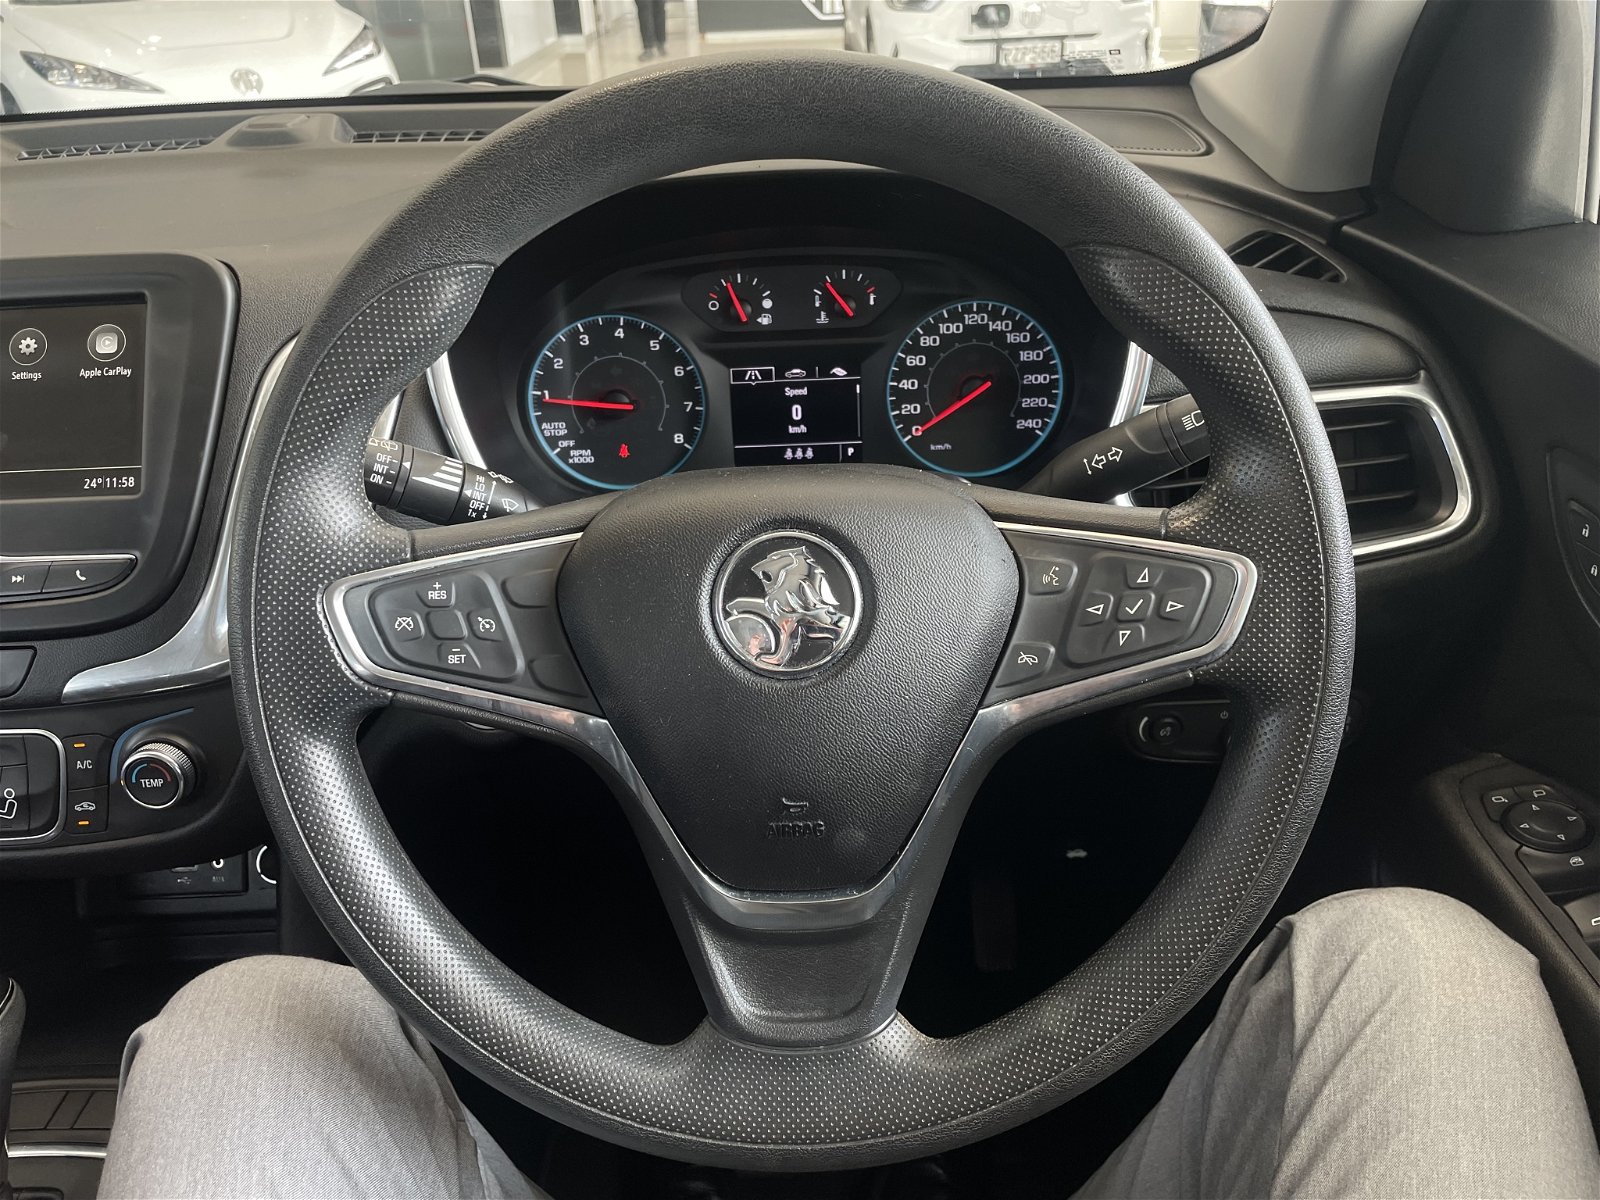 2018 Holden Equinox Ls 1.5P/6At 1.5L